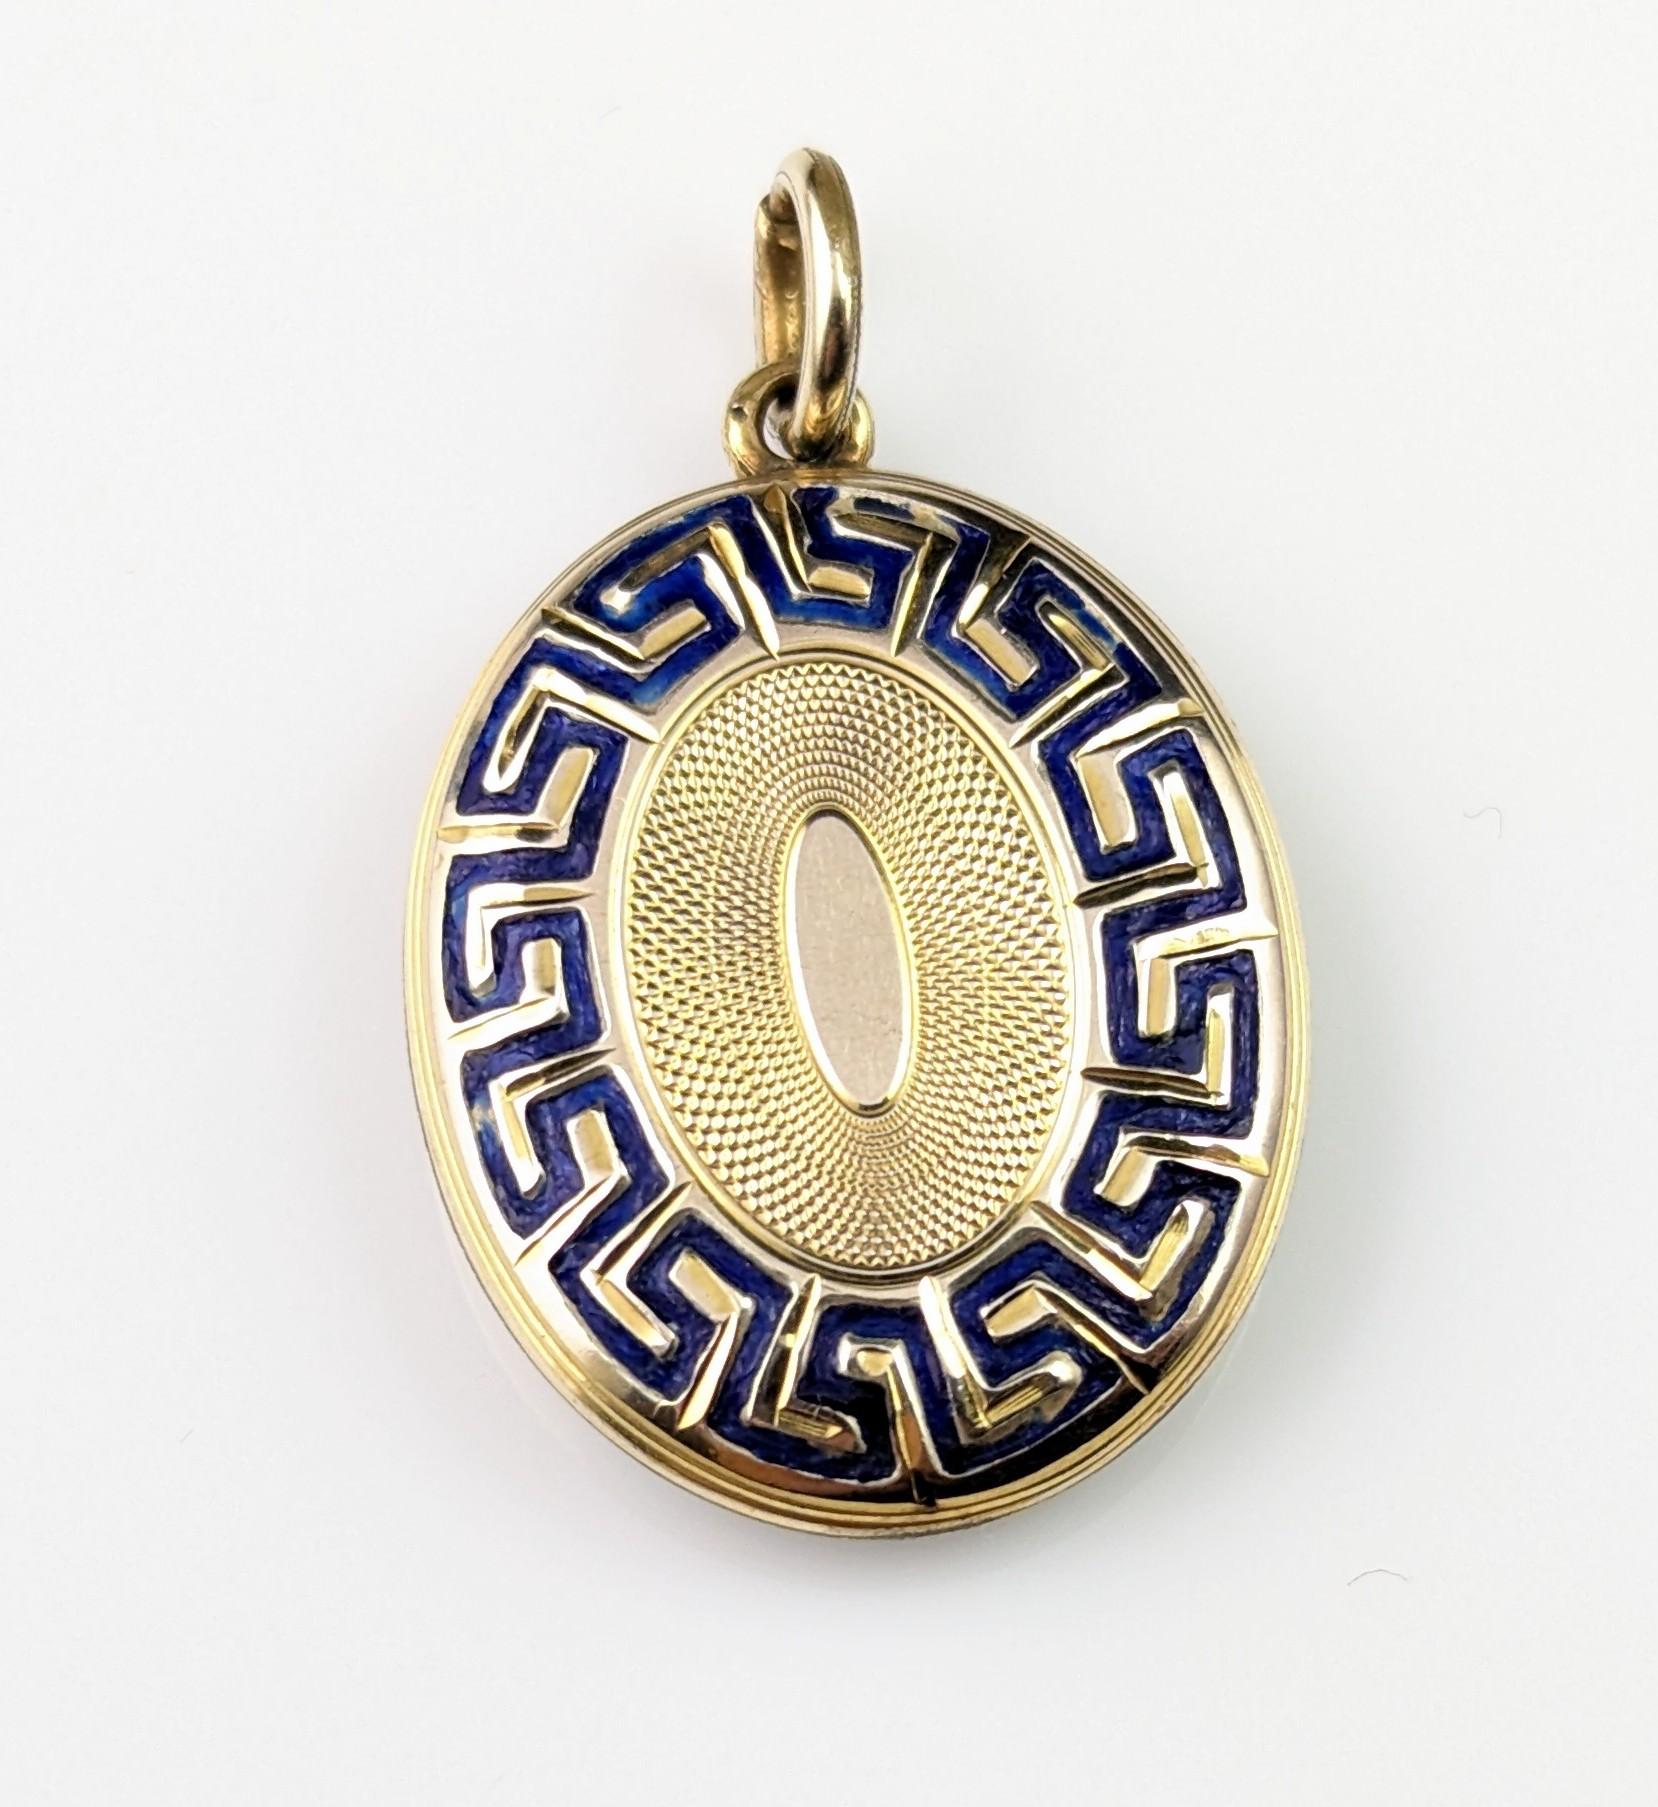 Antique 9k gold and blue enamel mourning locket, Greek key design  8